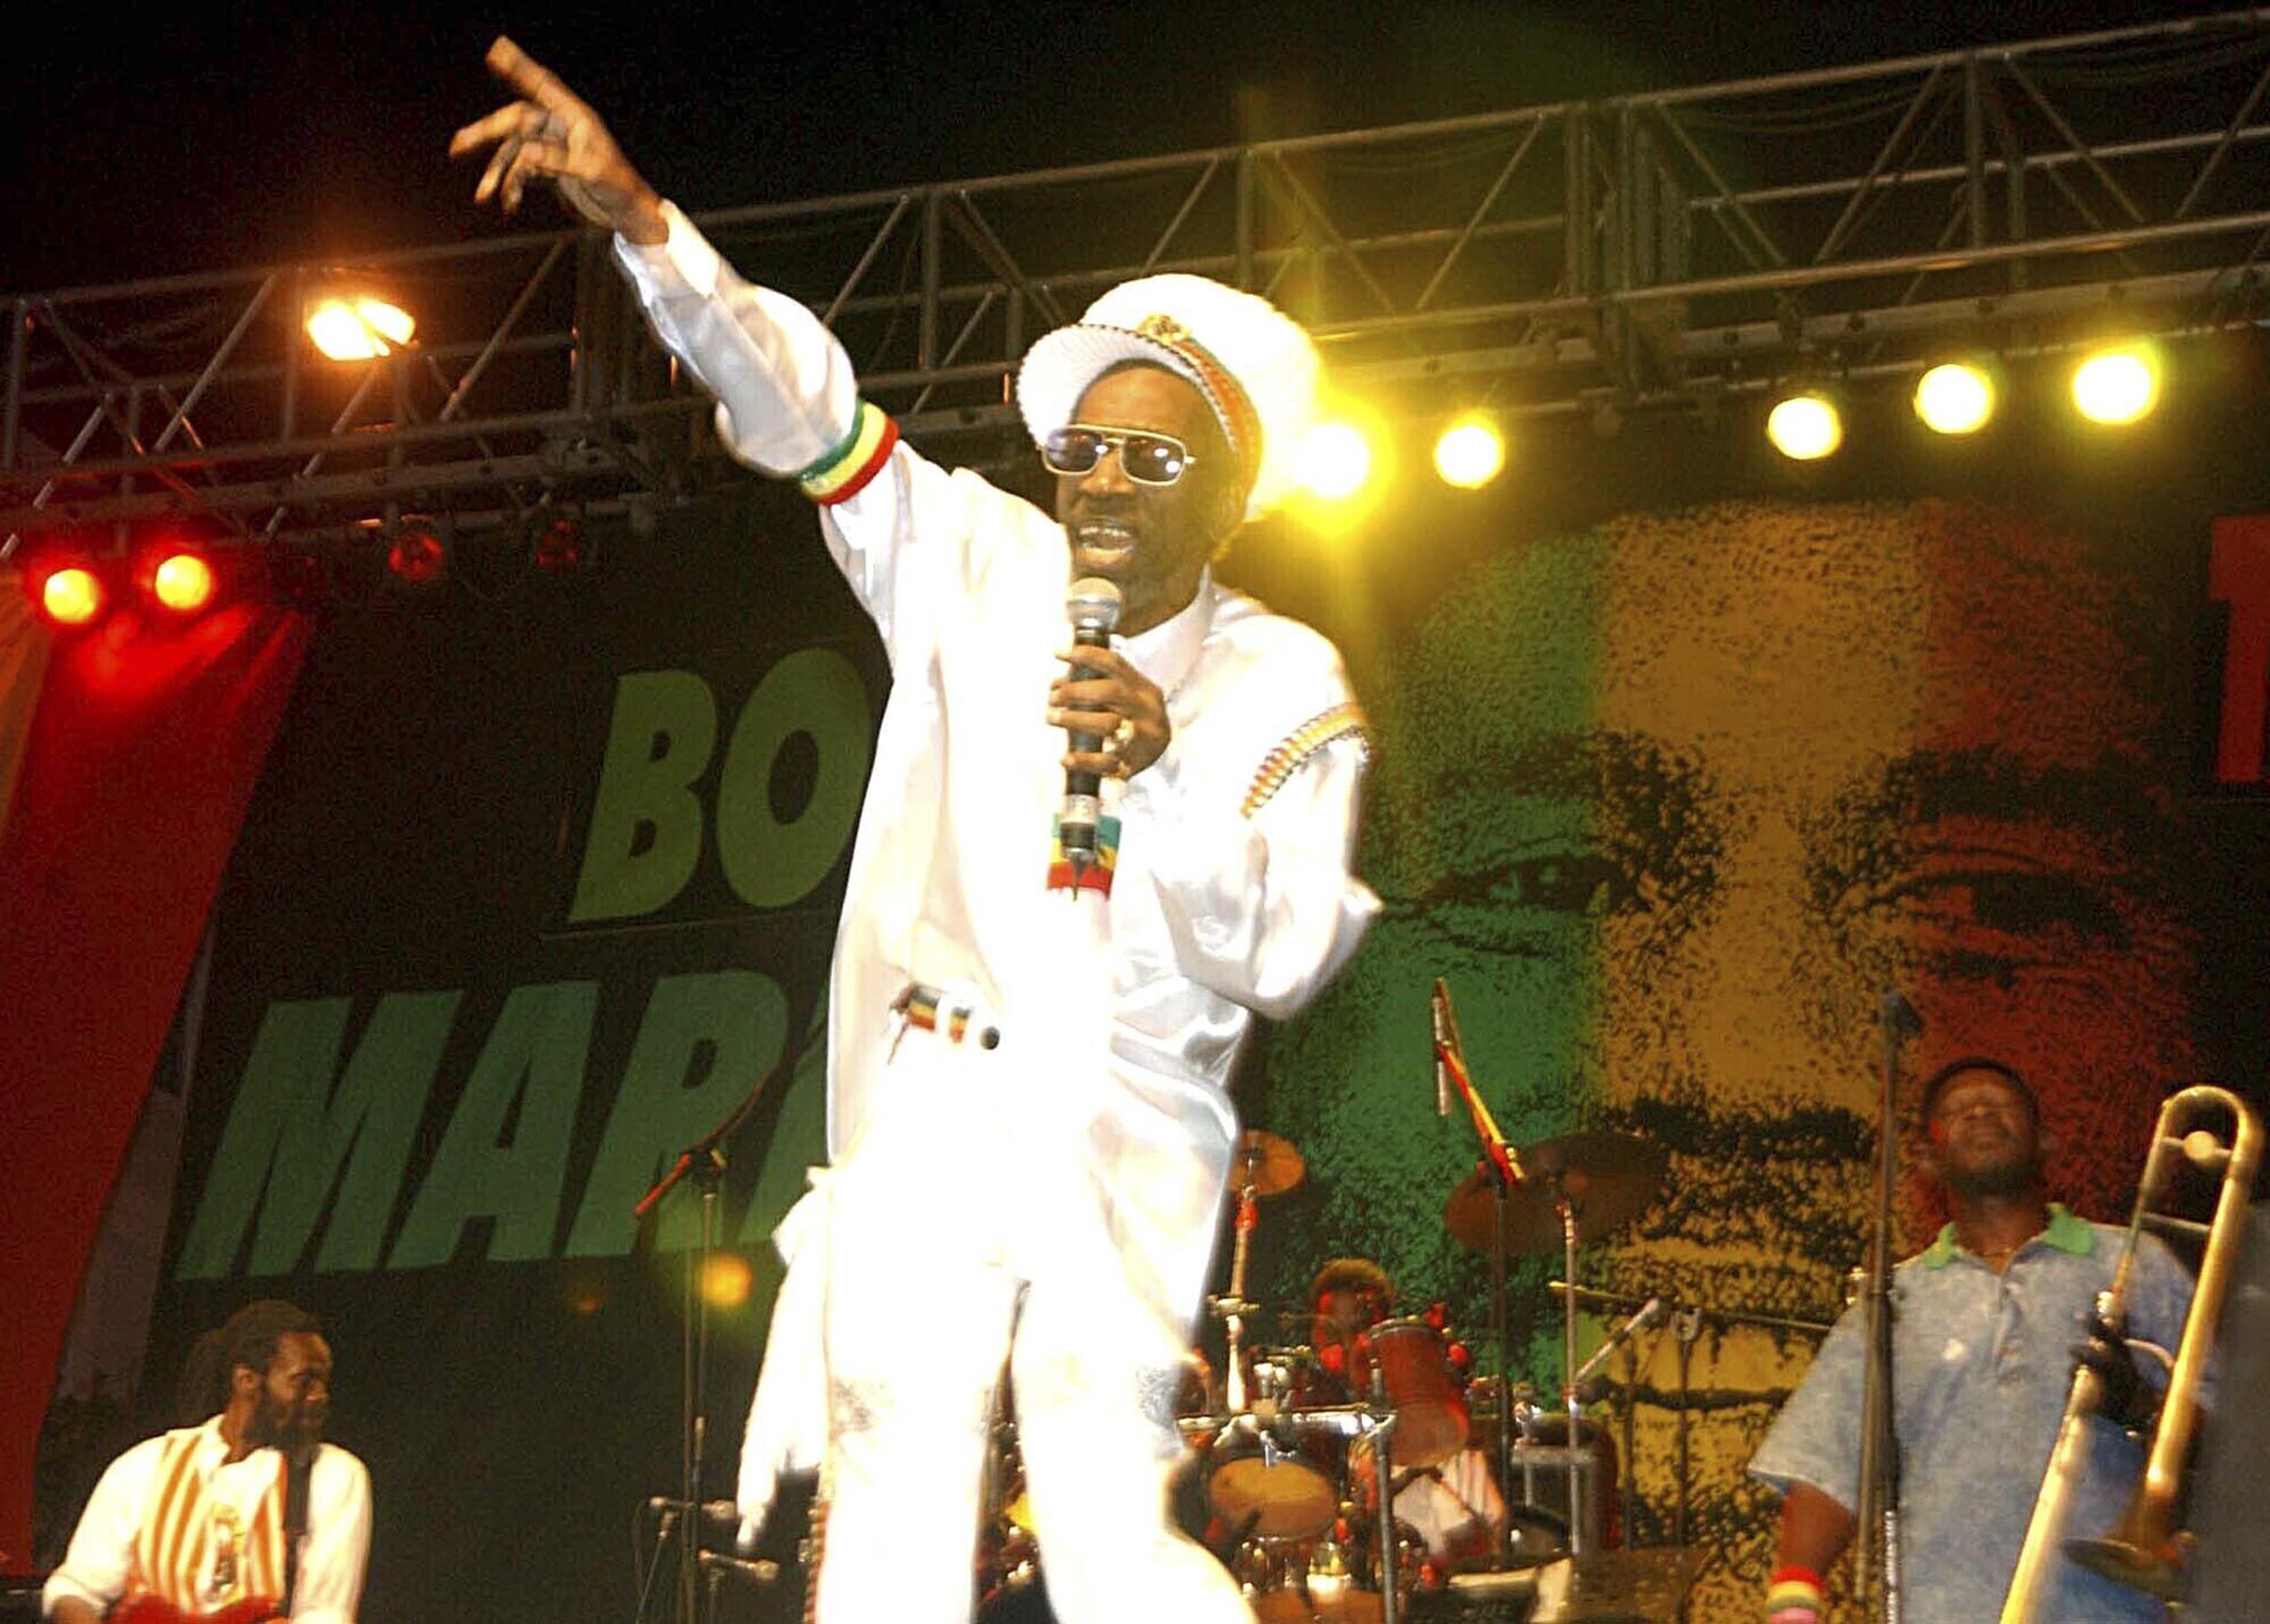 Además de su música, los Wailers y otros músicos rasta popularizaron la cultura rastafari entre los jamaiquinos acomodados en la década de 1970.